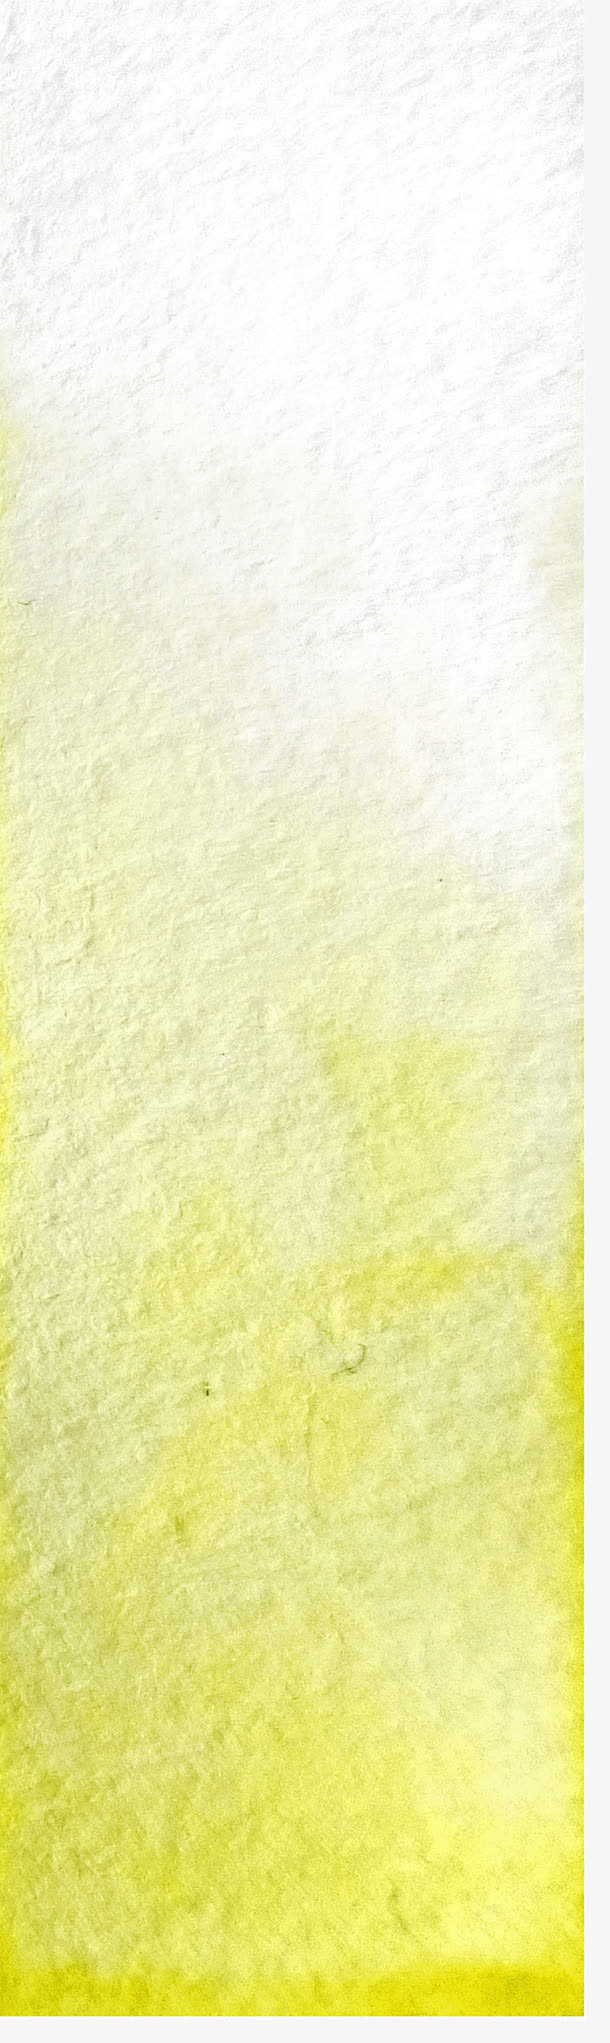 柠檬黄水彩墨迹